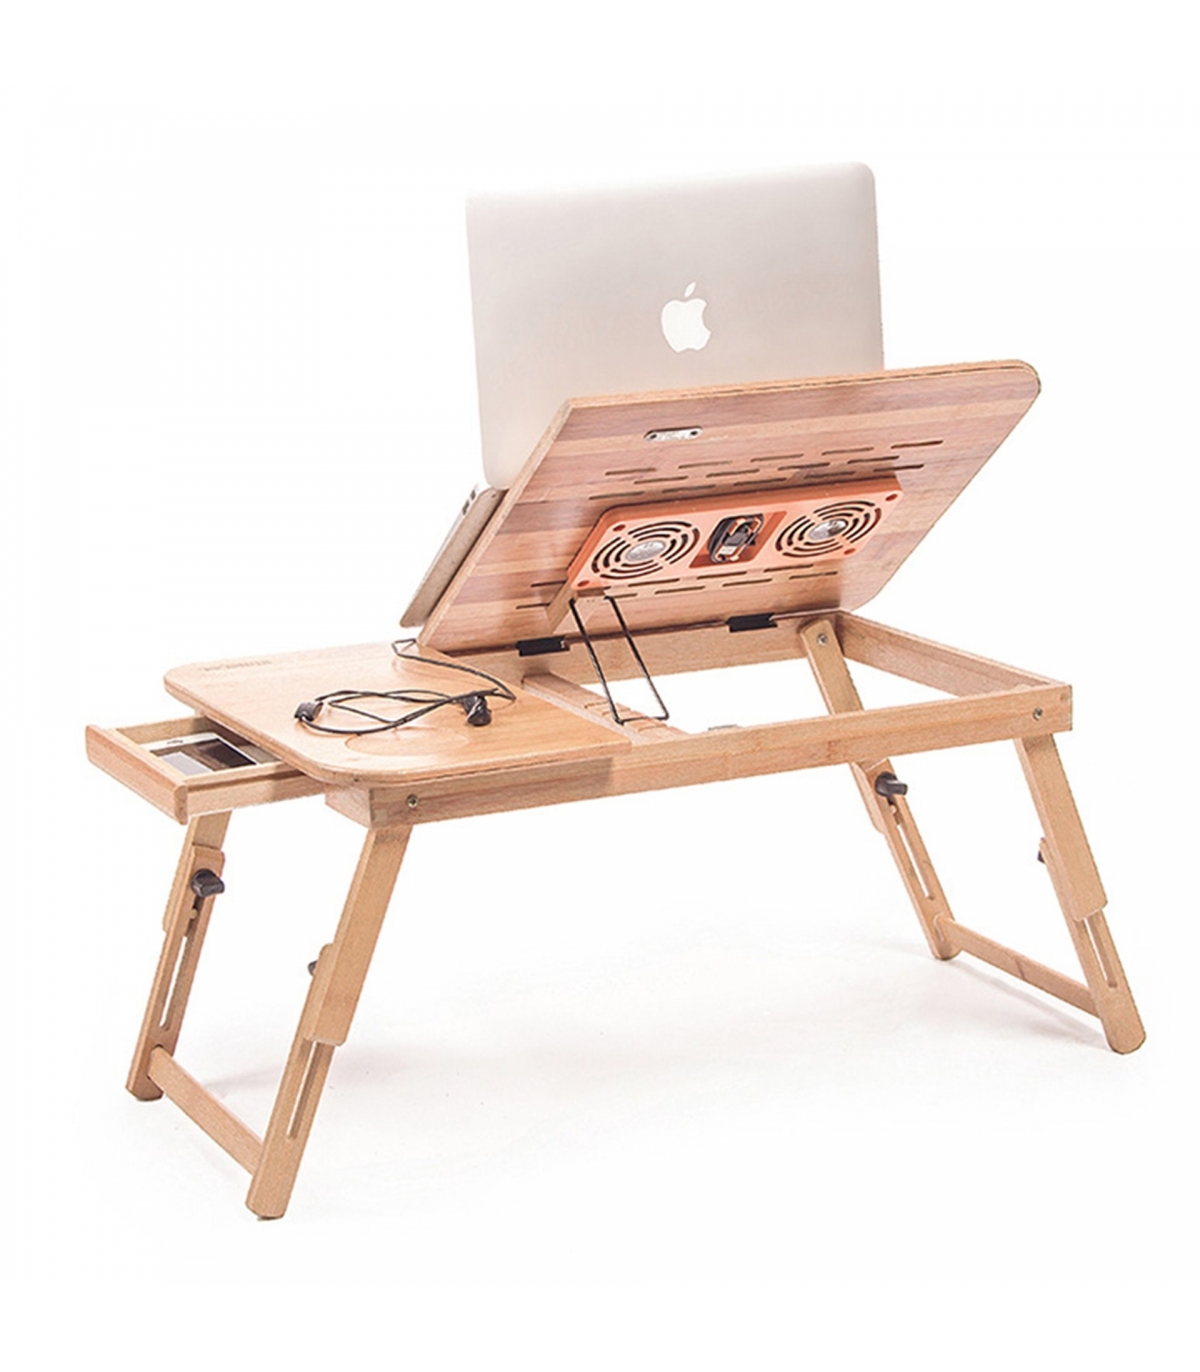 میز-چوبی-از-جنس-بامبو-لپ-تاپ-35-سانتی-متری-همراه-با-2فن-مدل-b-56(1).jpg